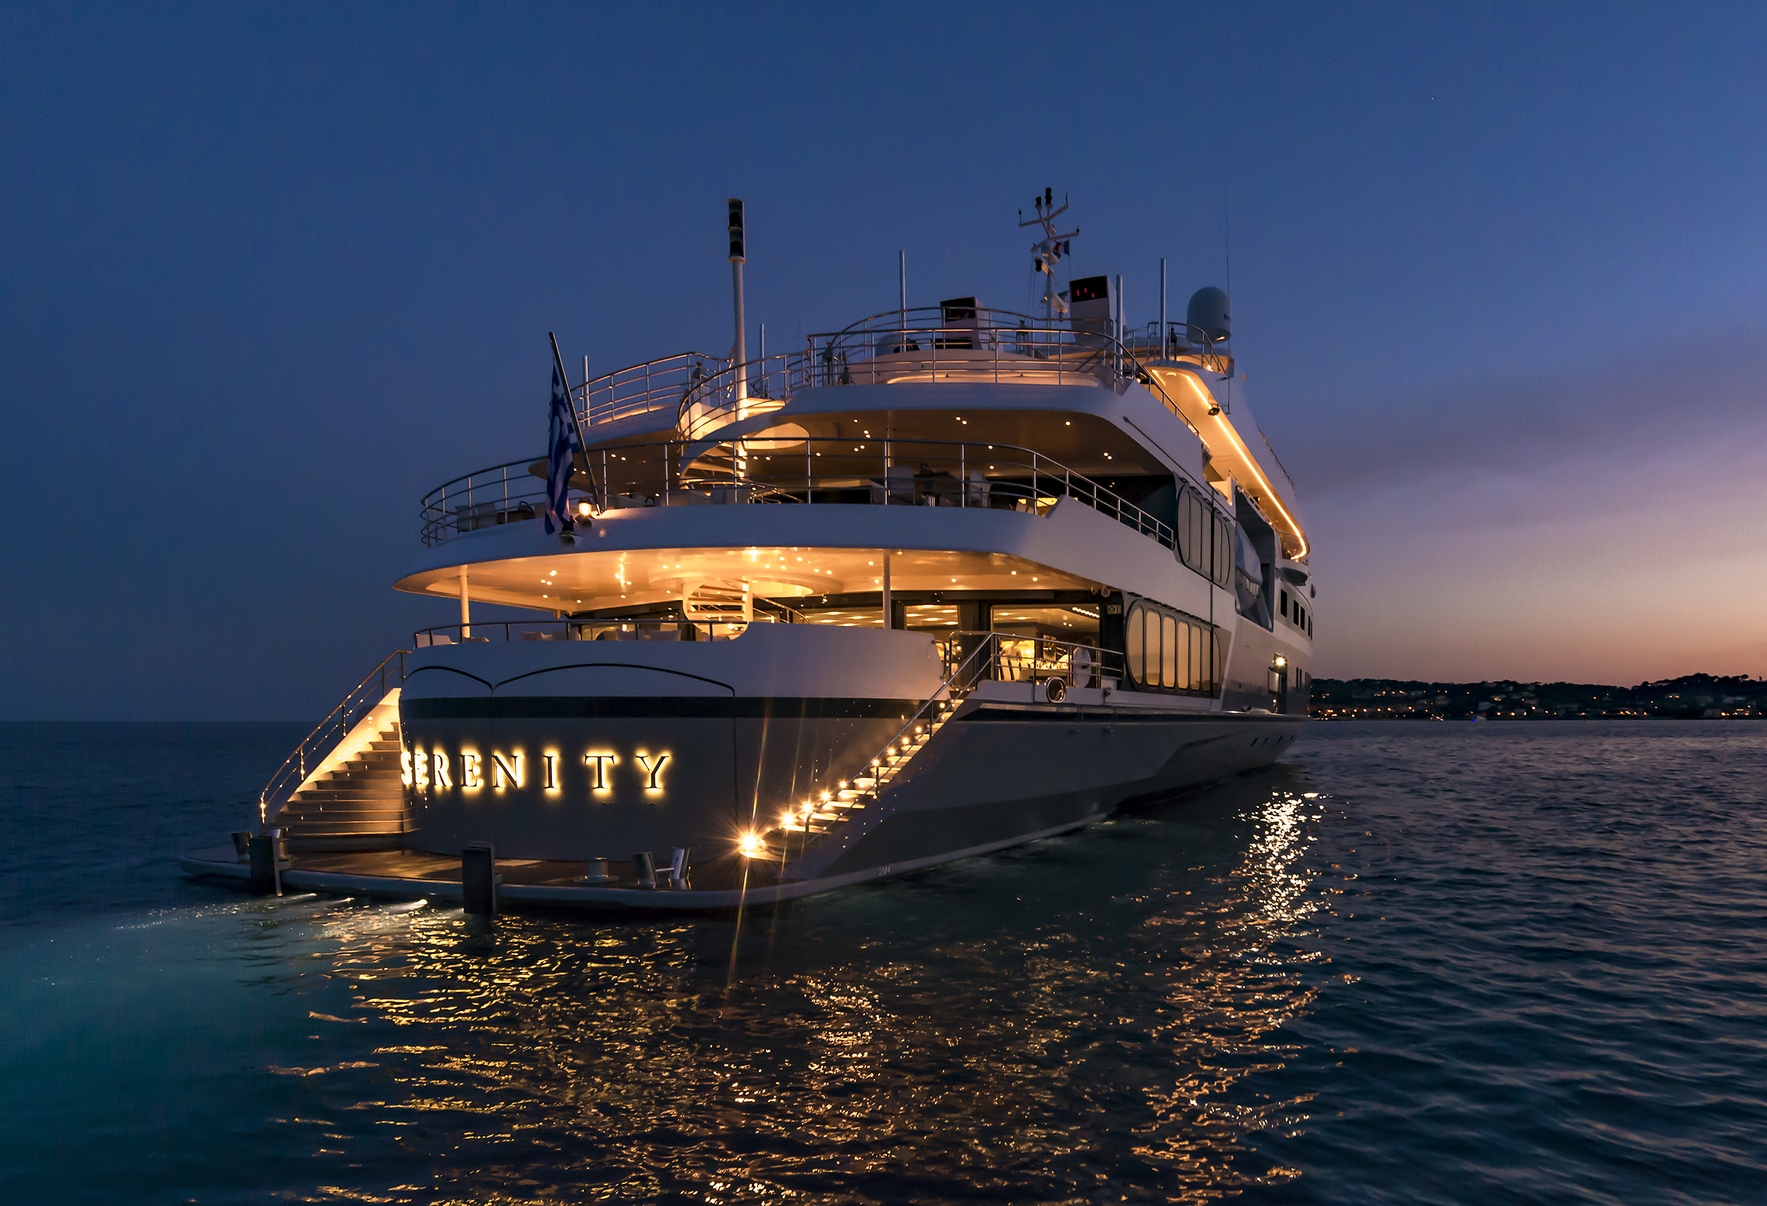 yacht serenity prix